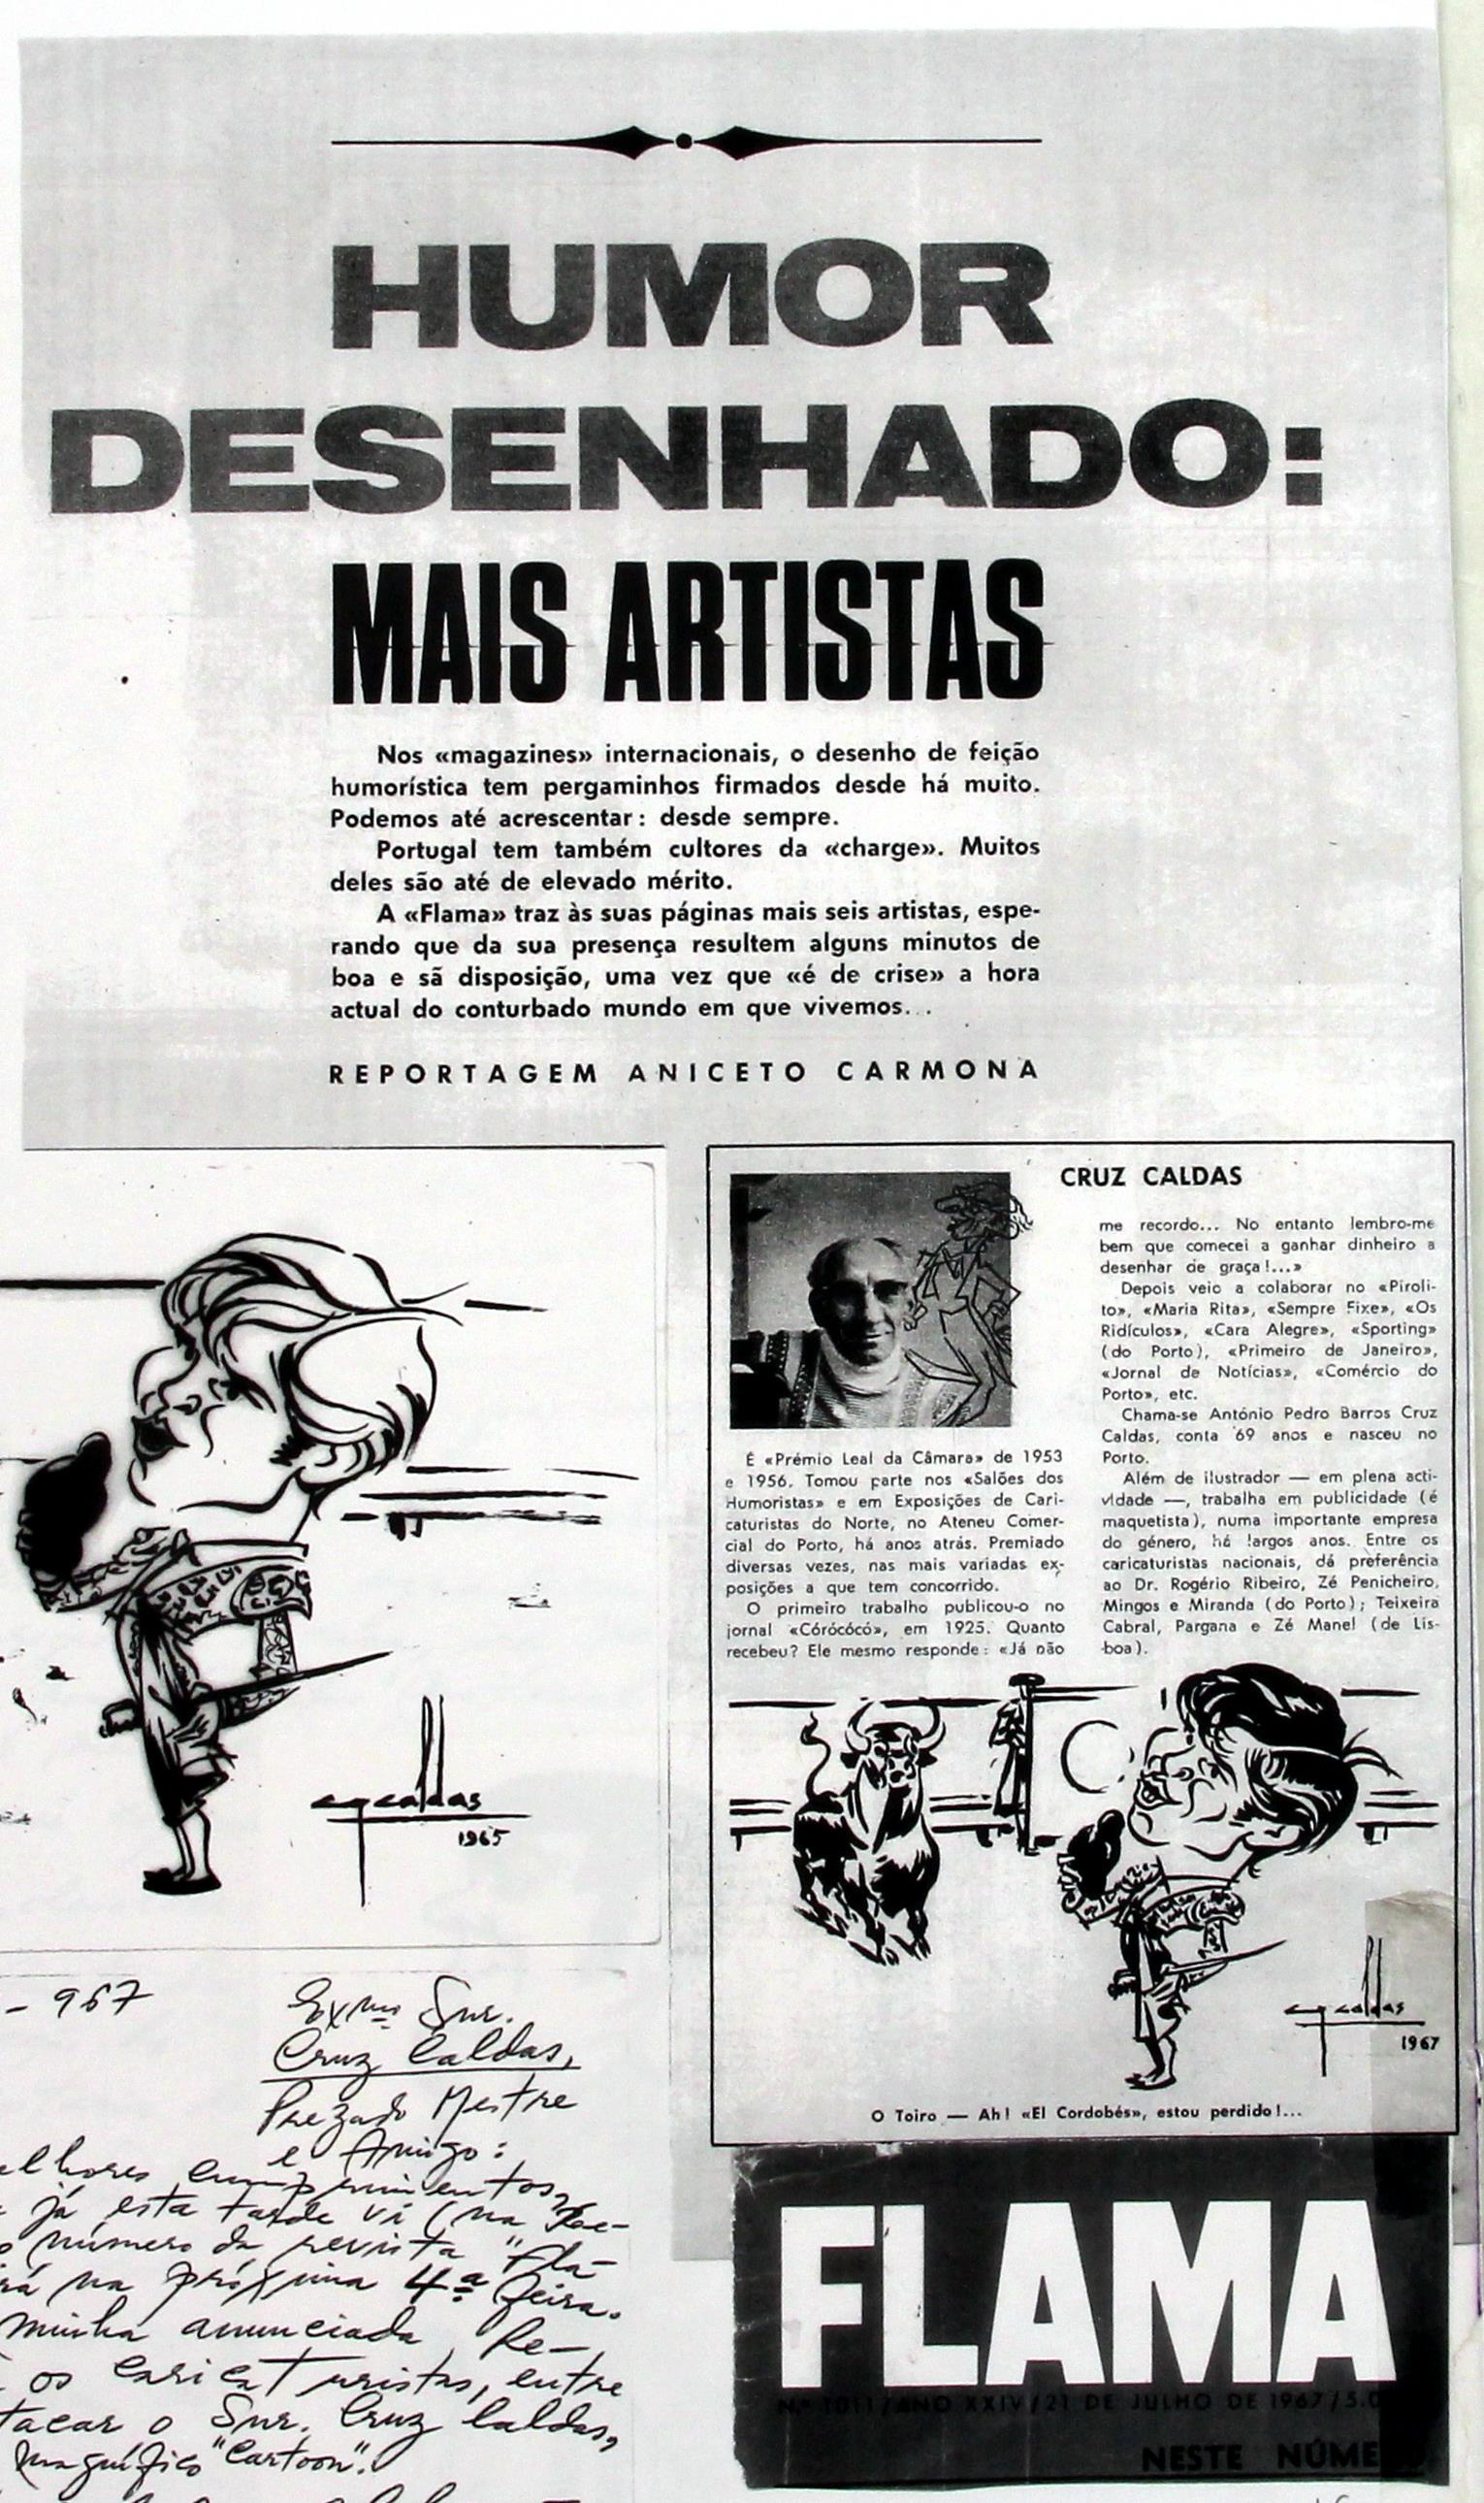 Cruz Caldas e Aniceto Carmona, caricaturista lisboeta : «Flama» : humor desenhado : mais artistas : Cruz Caldas